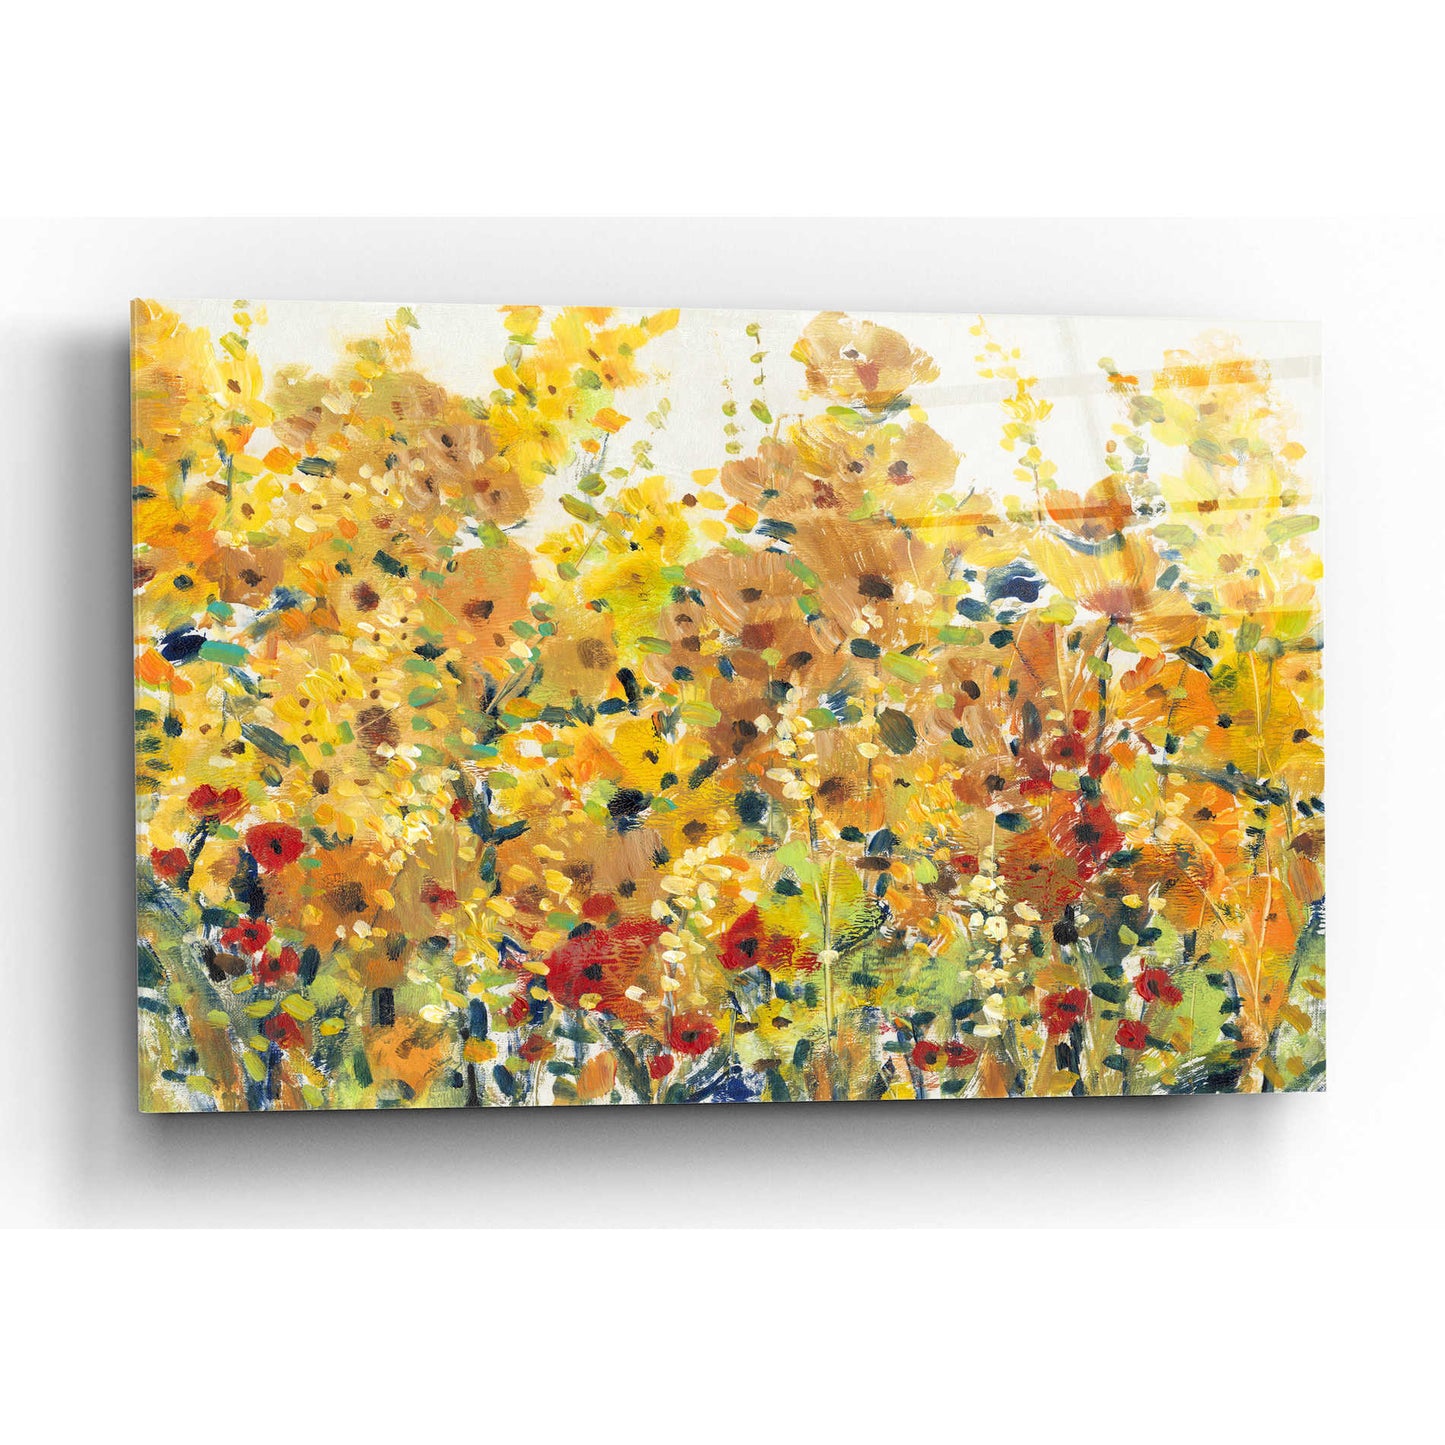 Epic Art 'Golden Summer Garden I' by Tim O'Toole, Acrylic Glass Wall Art,16x12